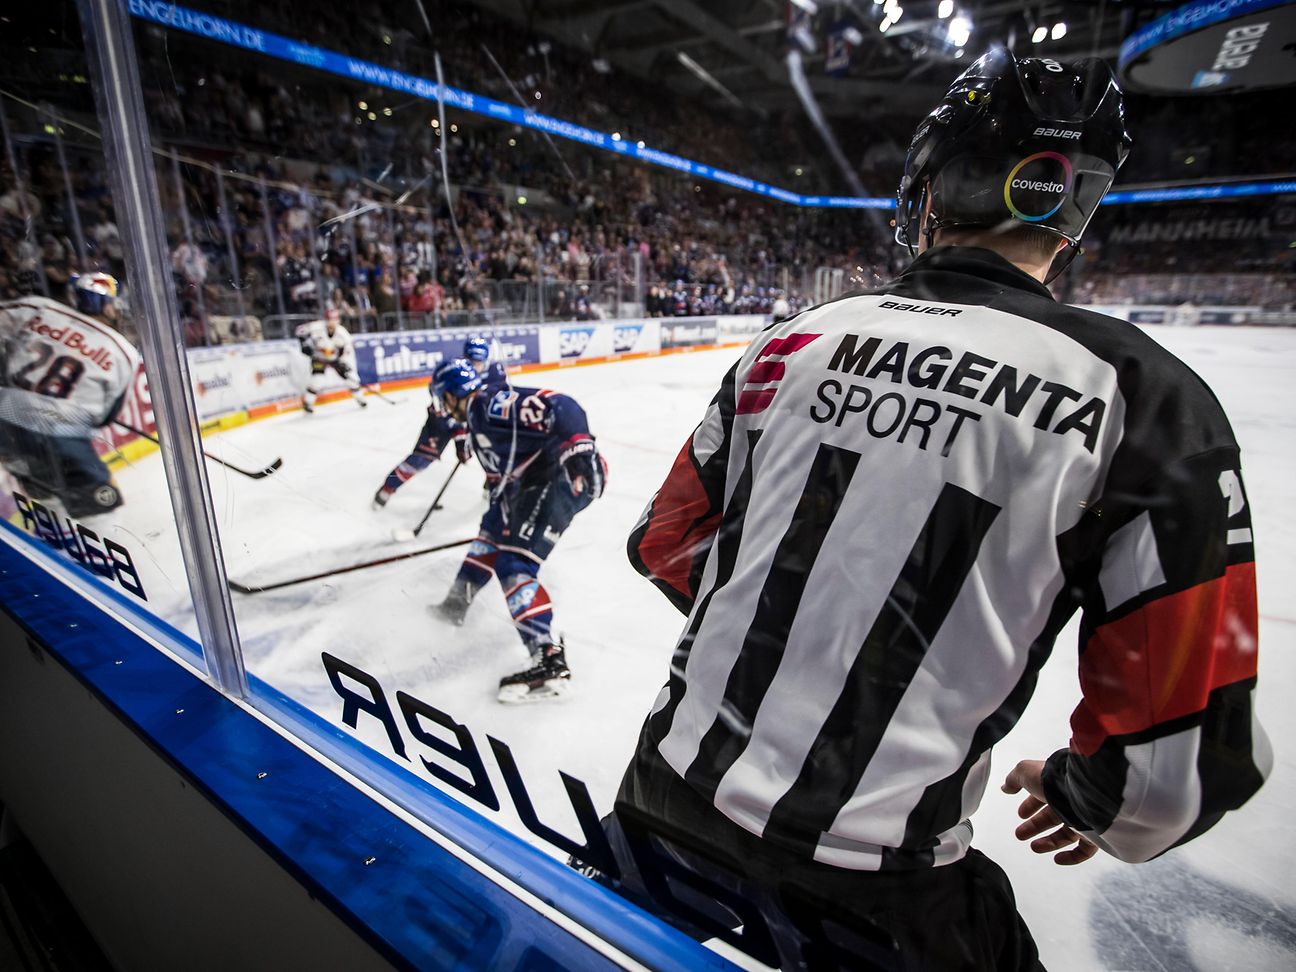 MagentaSport Eishockey-Saisonstart mit Konferenz Deutsche Telekom